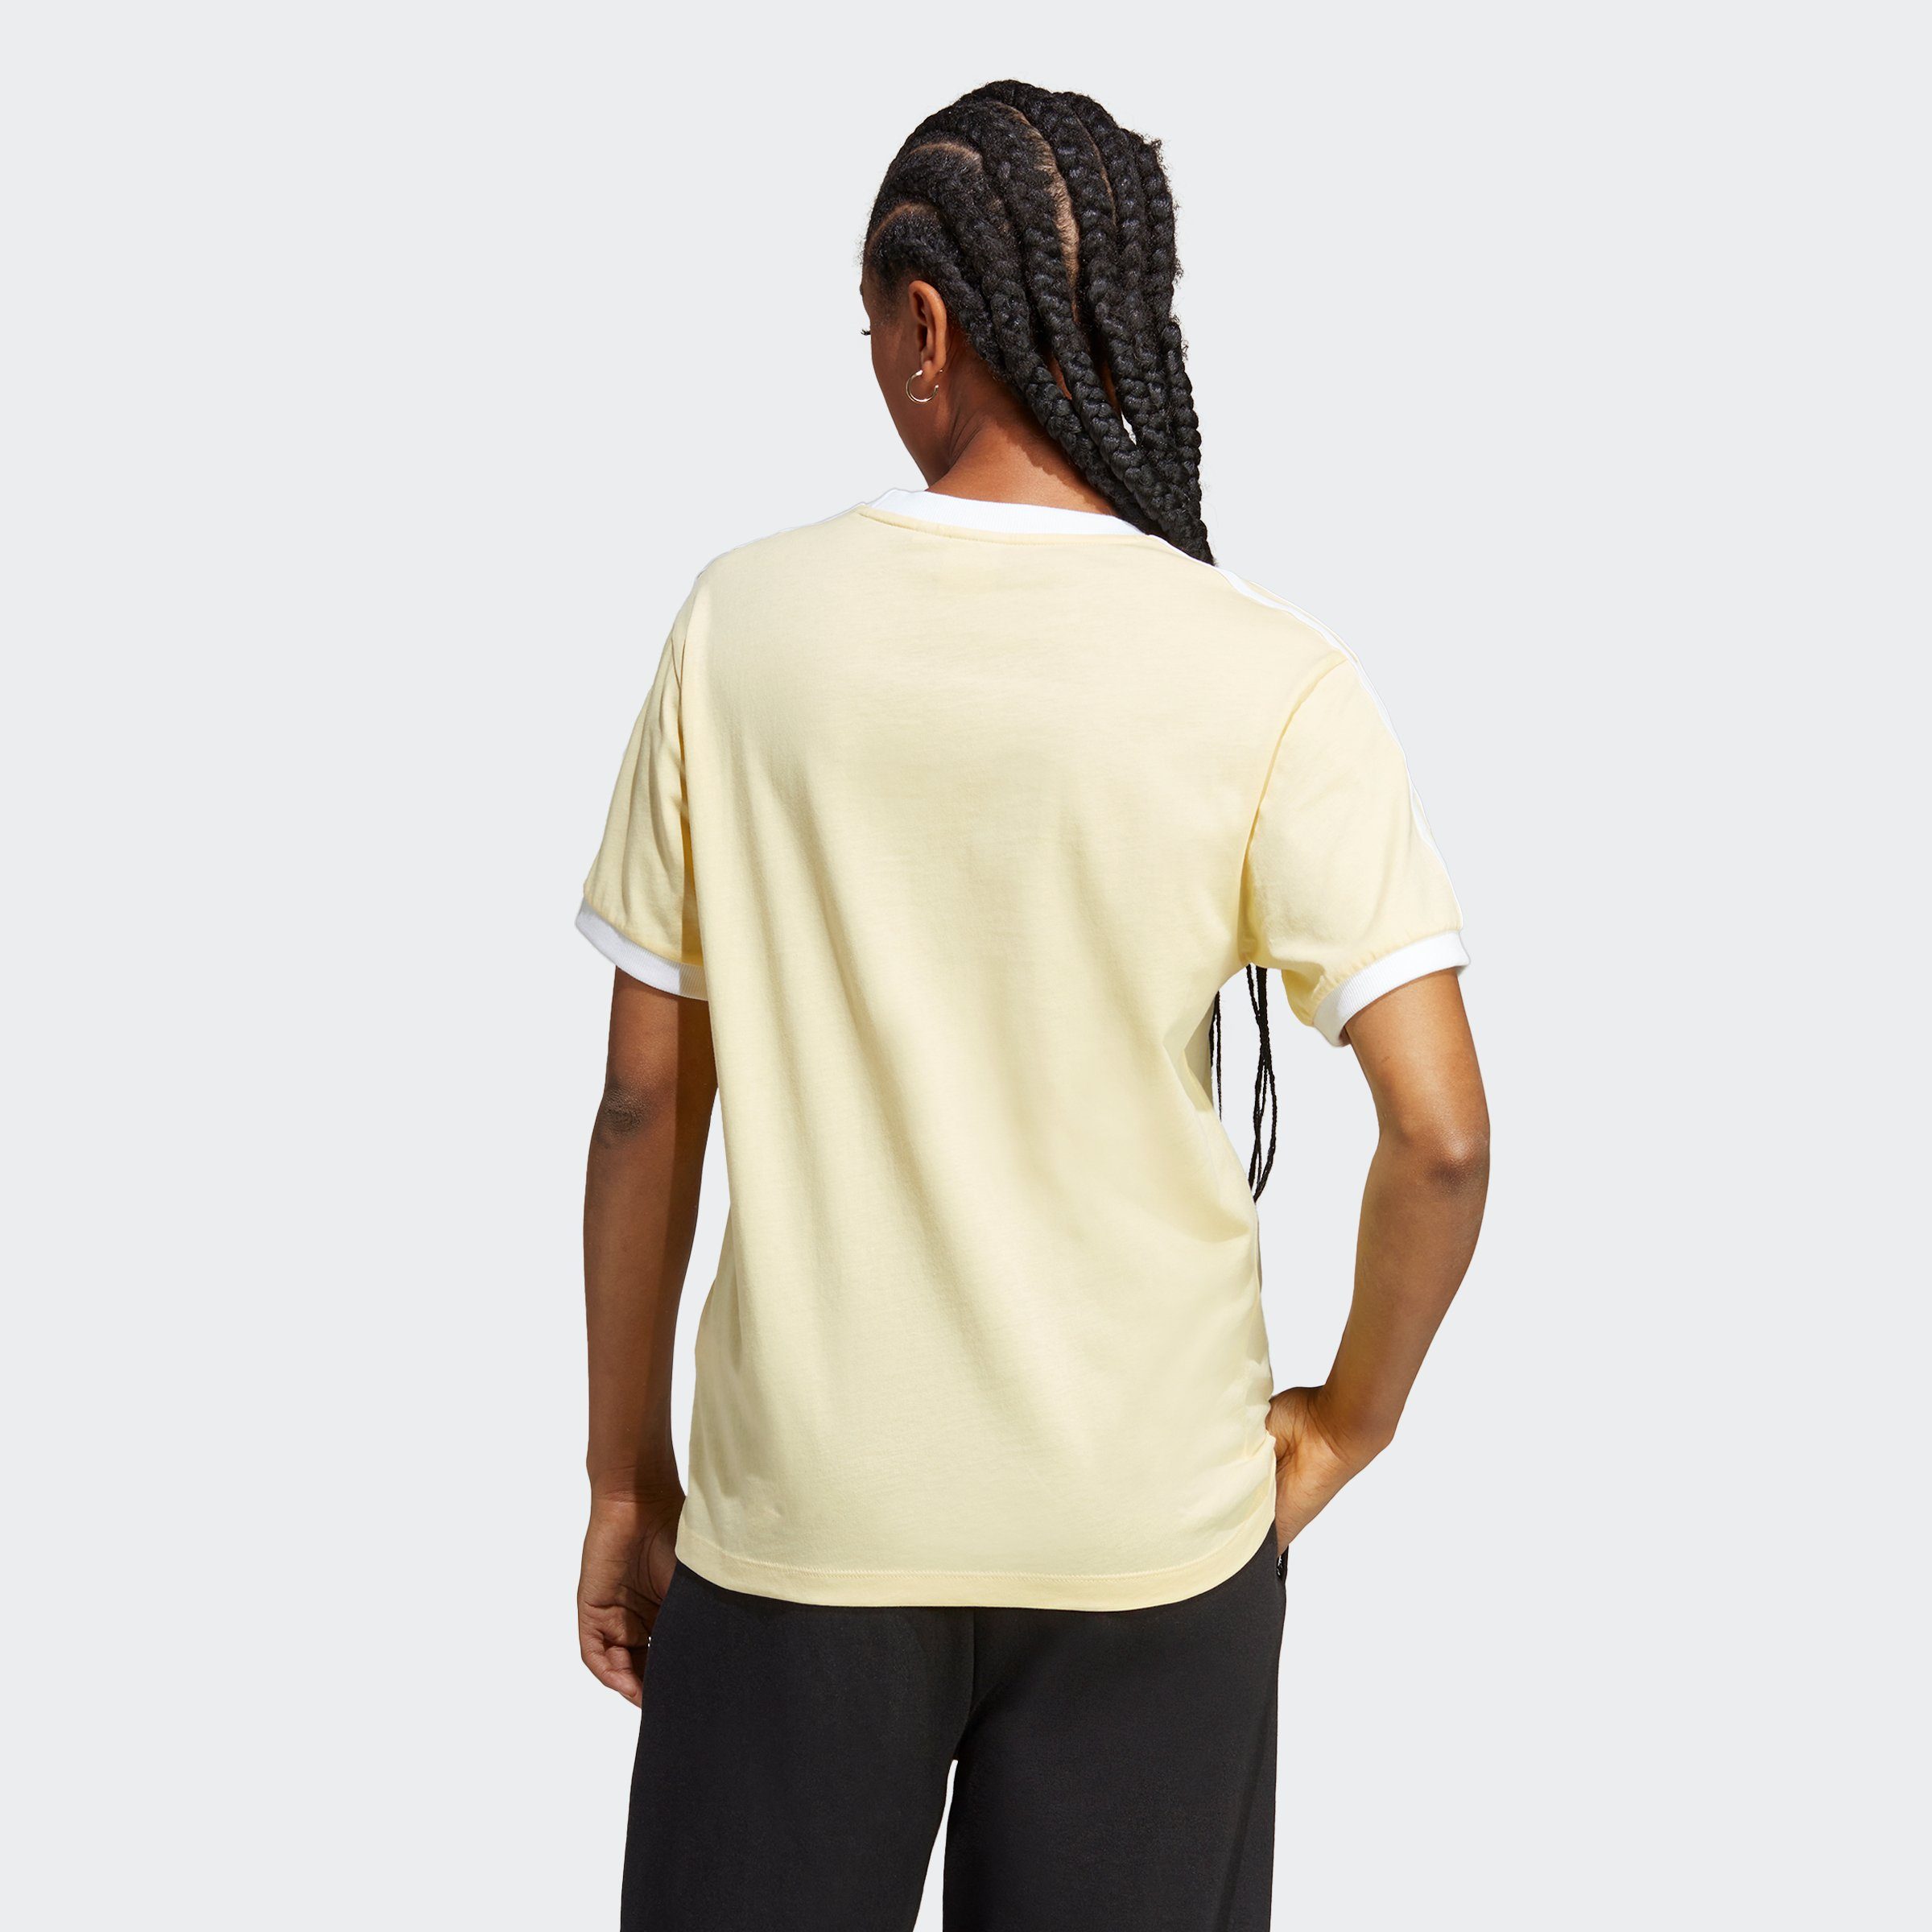 T-Shirt Almost Yellow CLASSICS ADICOLOR Originals adidas 3-STREIFEN